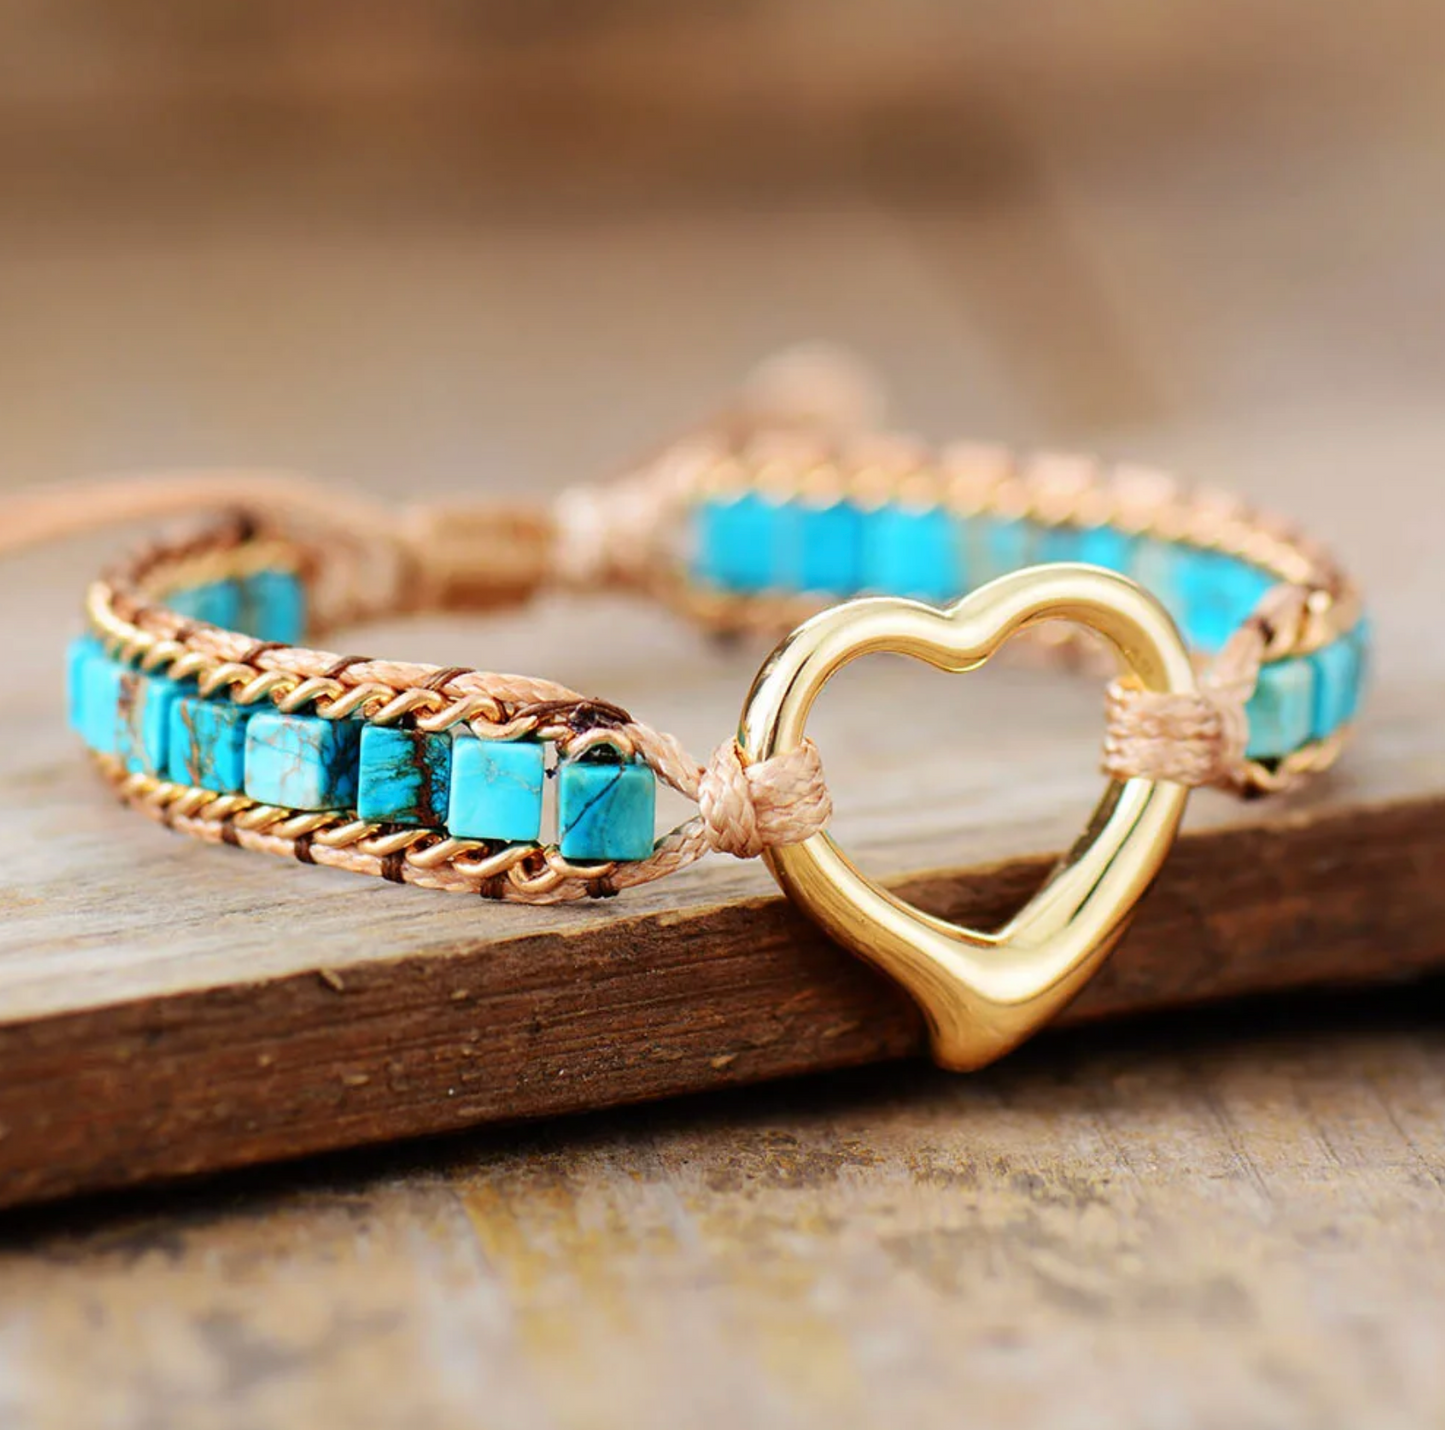 Goldtone Heart & Braided Square Turquoise Stone Adjustable Bracelet